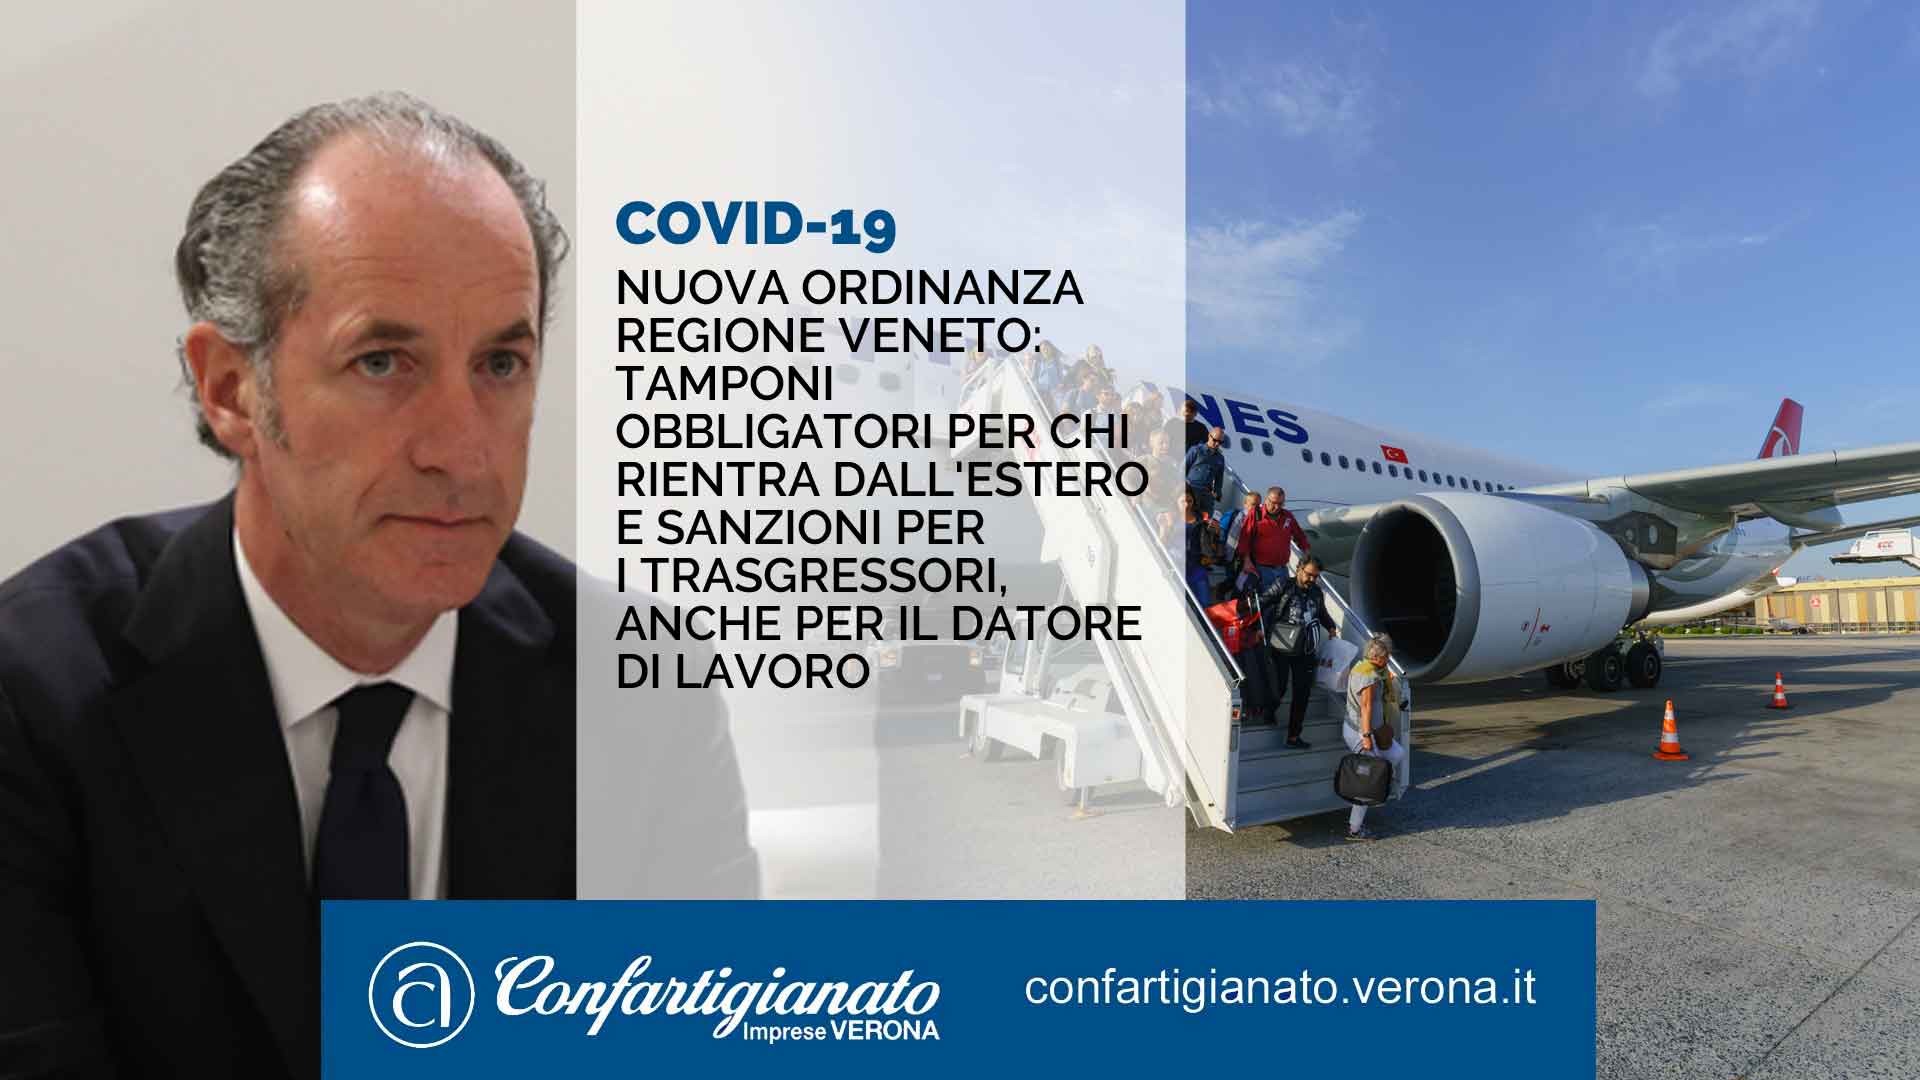 COVID-19 – Nuova ordinanza Regione Veneto: tamponi obbligatori per chi rientra dall'estero e sanzioni per chi non ottempera, anche per il datore di lavoro